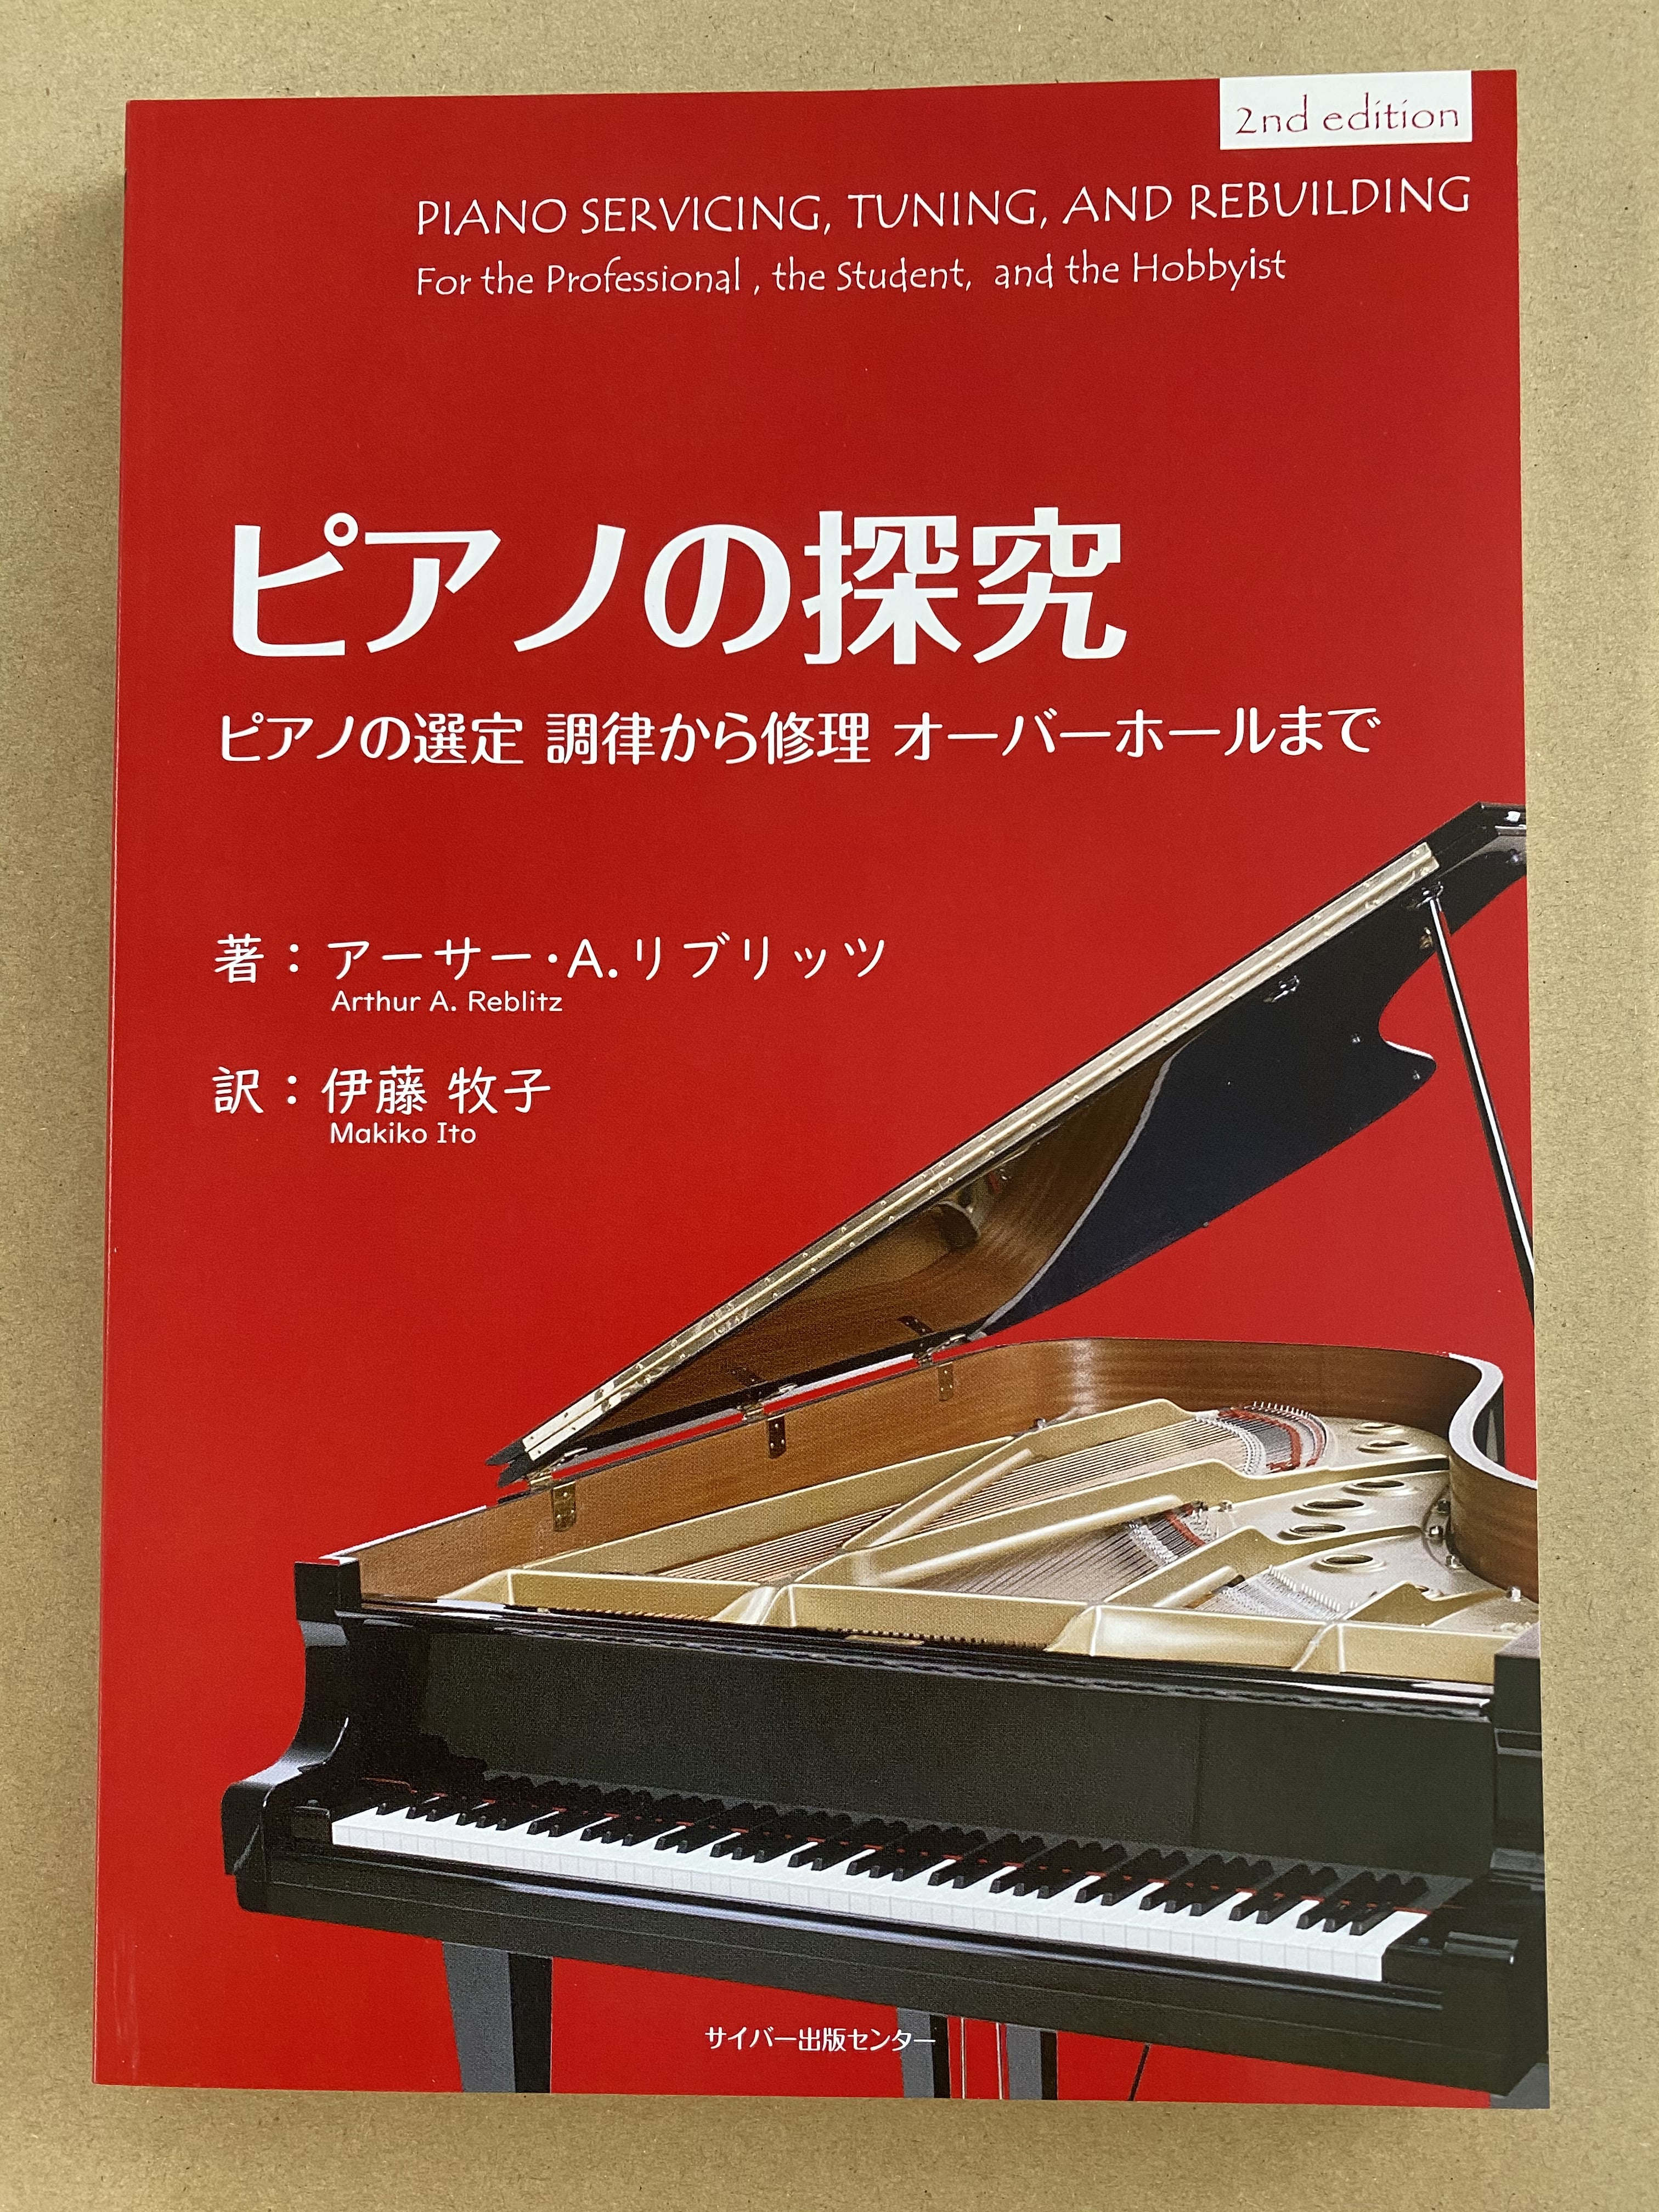 書籍｜書籍｜調律工具｜ピアノ調律工具のイトーシンミュージック